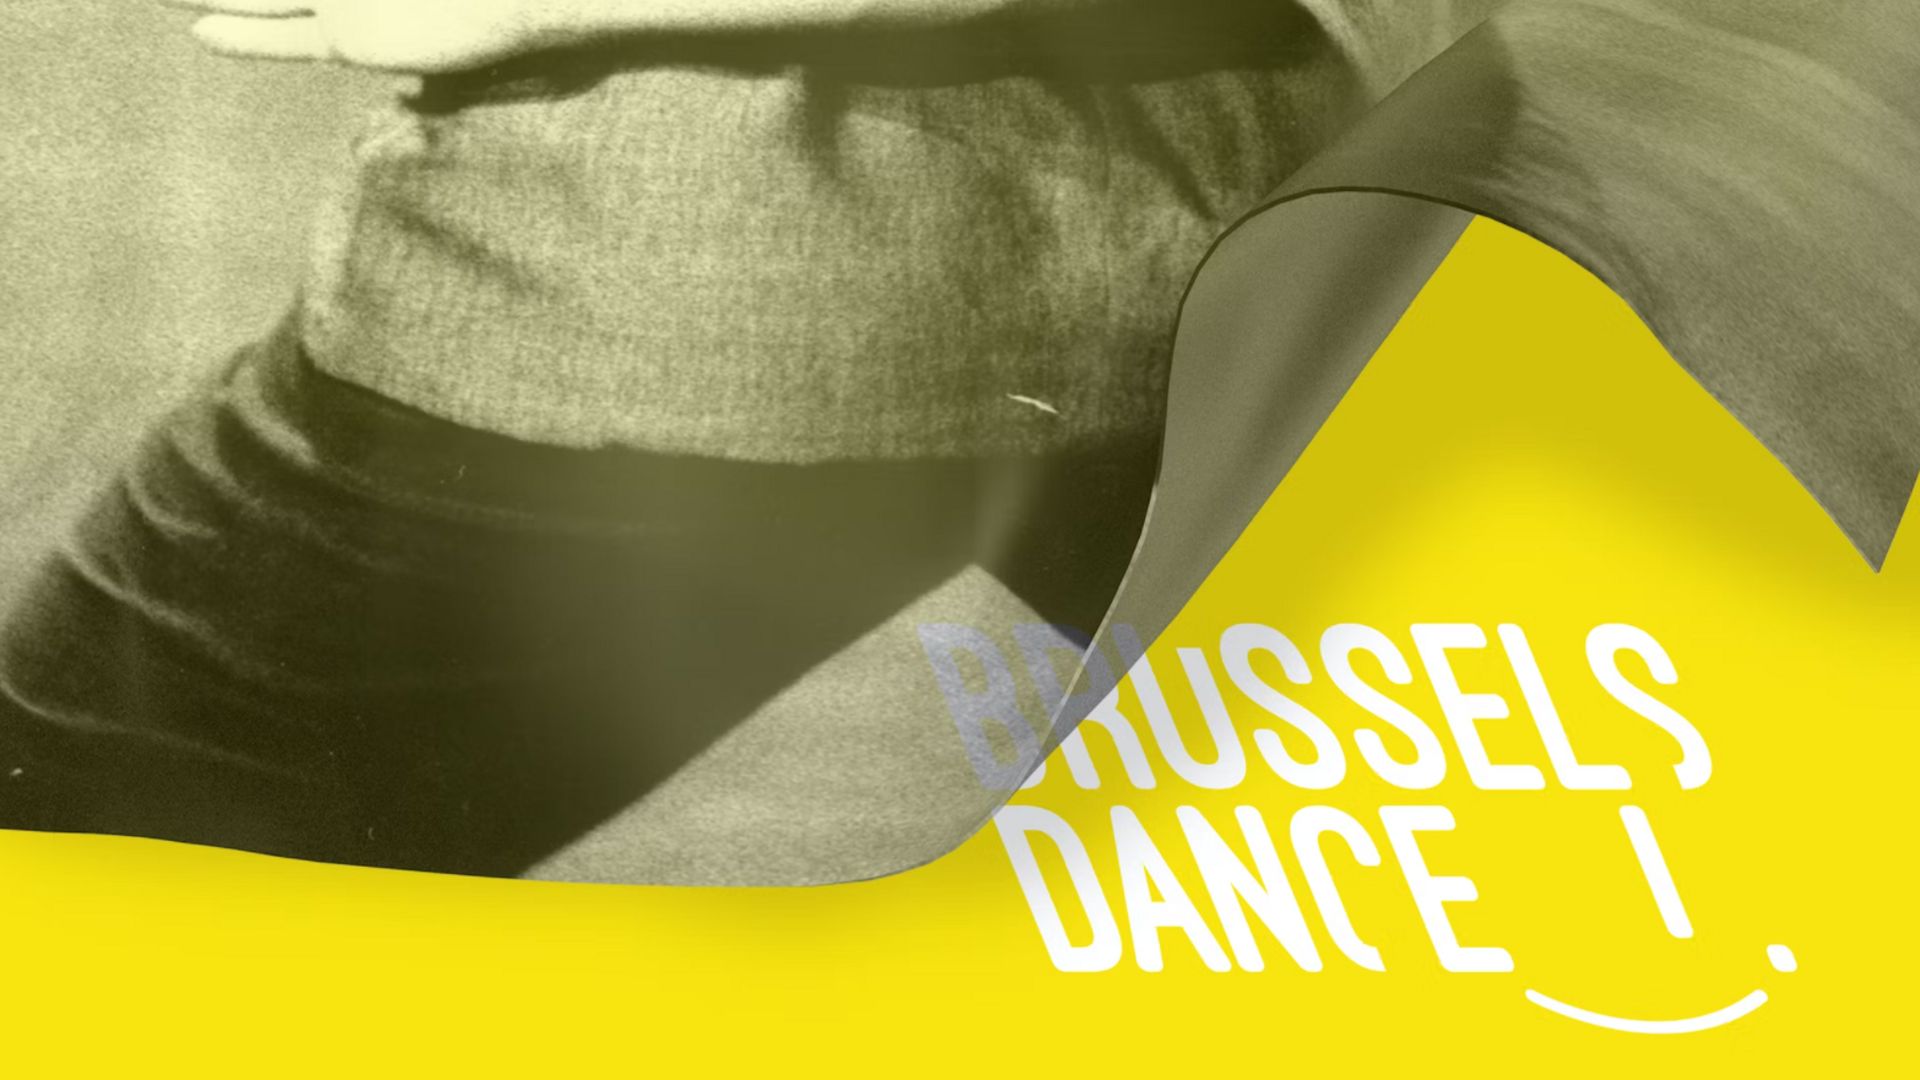 La 7e édition de Brussels, dance ! aura lieu du 3 mars au 30 avril 2022 et proposera plus de 60 spectacles et conférences en 18 lieux culturels bicommunautaires.